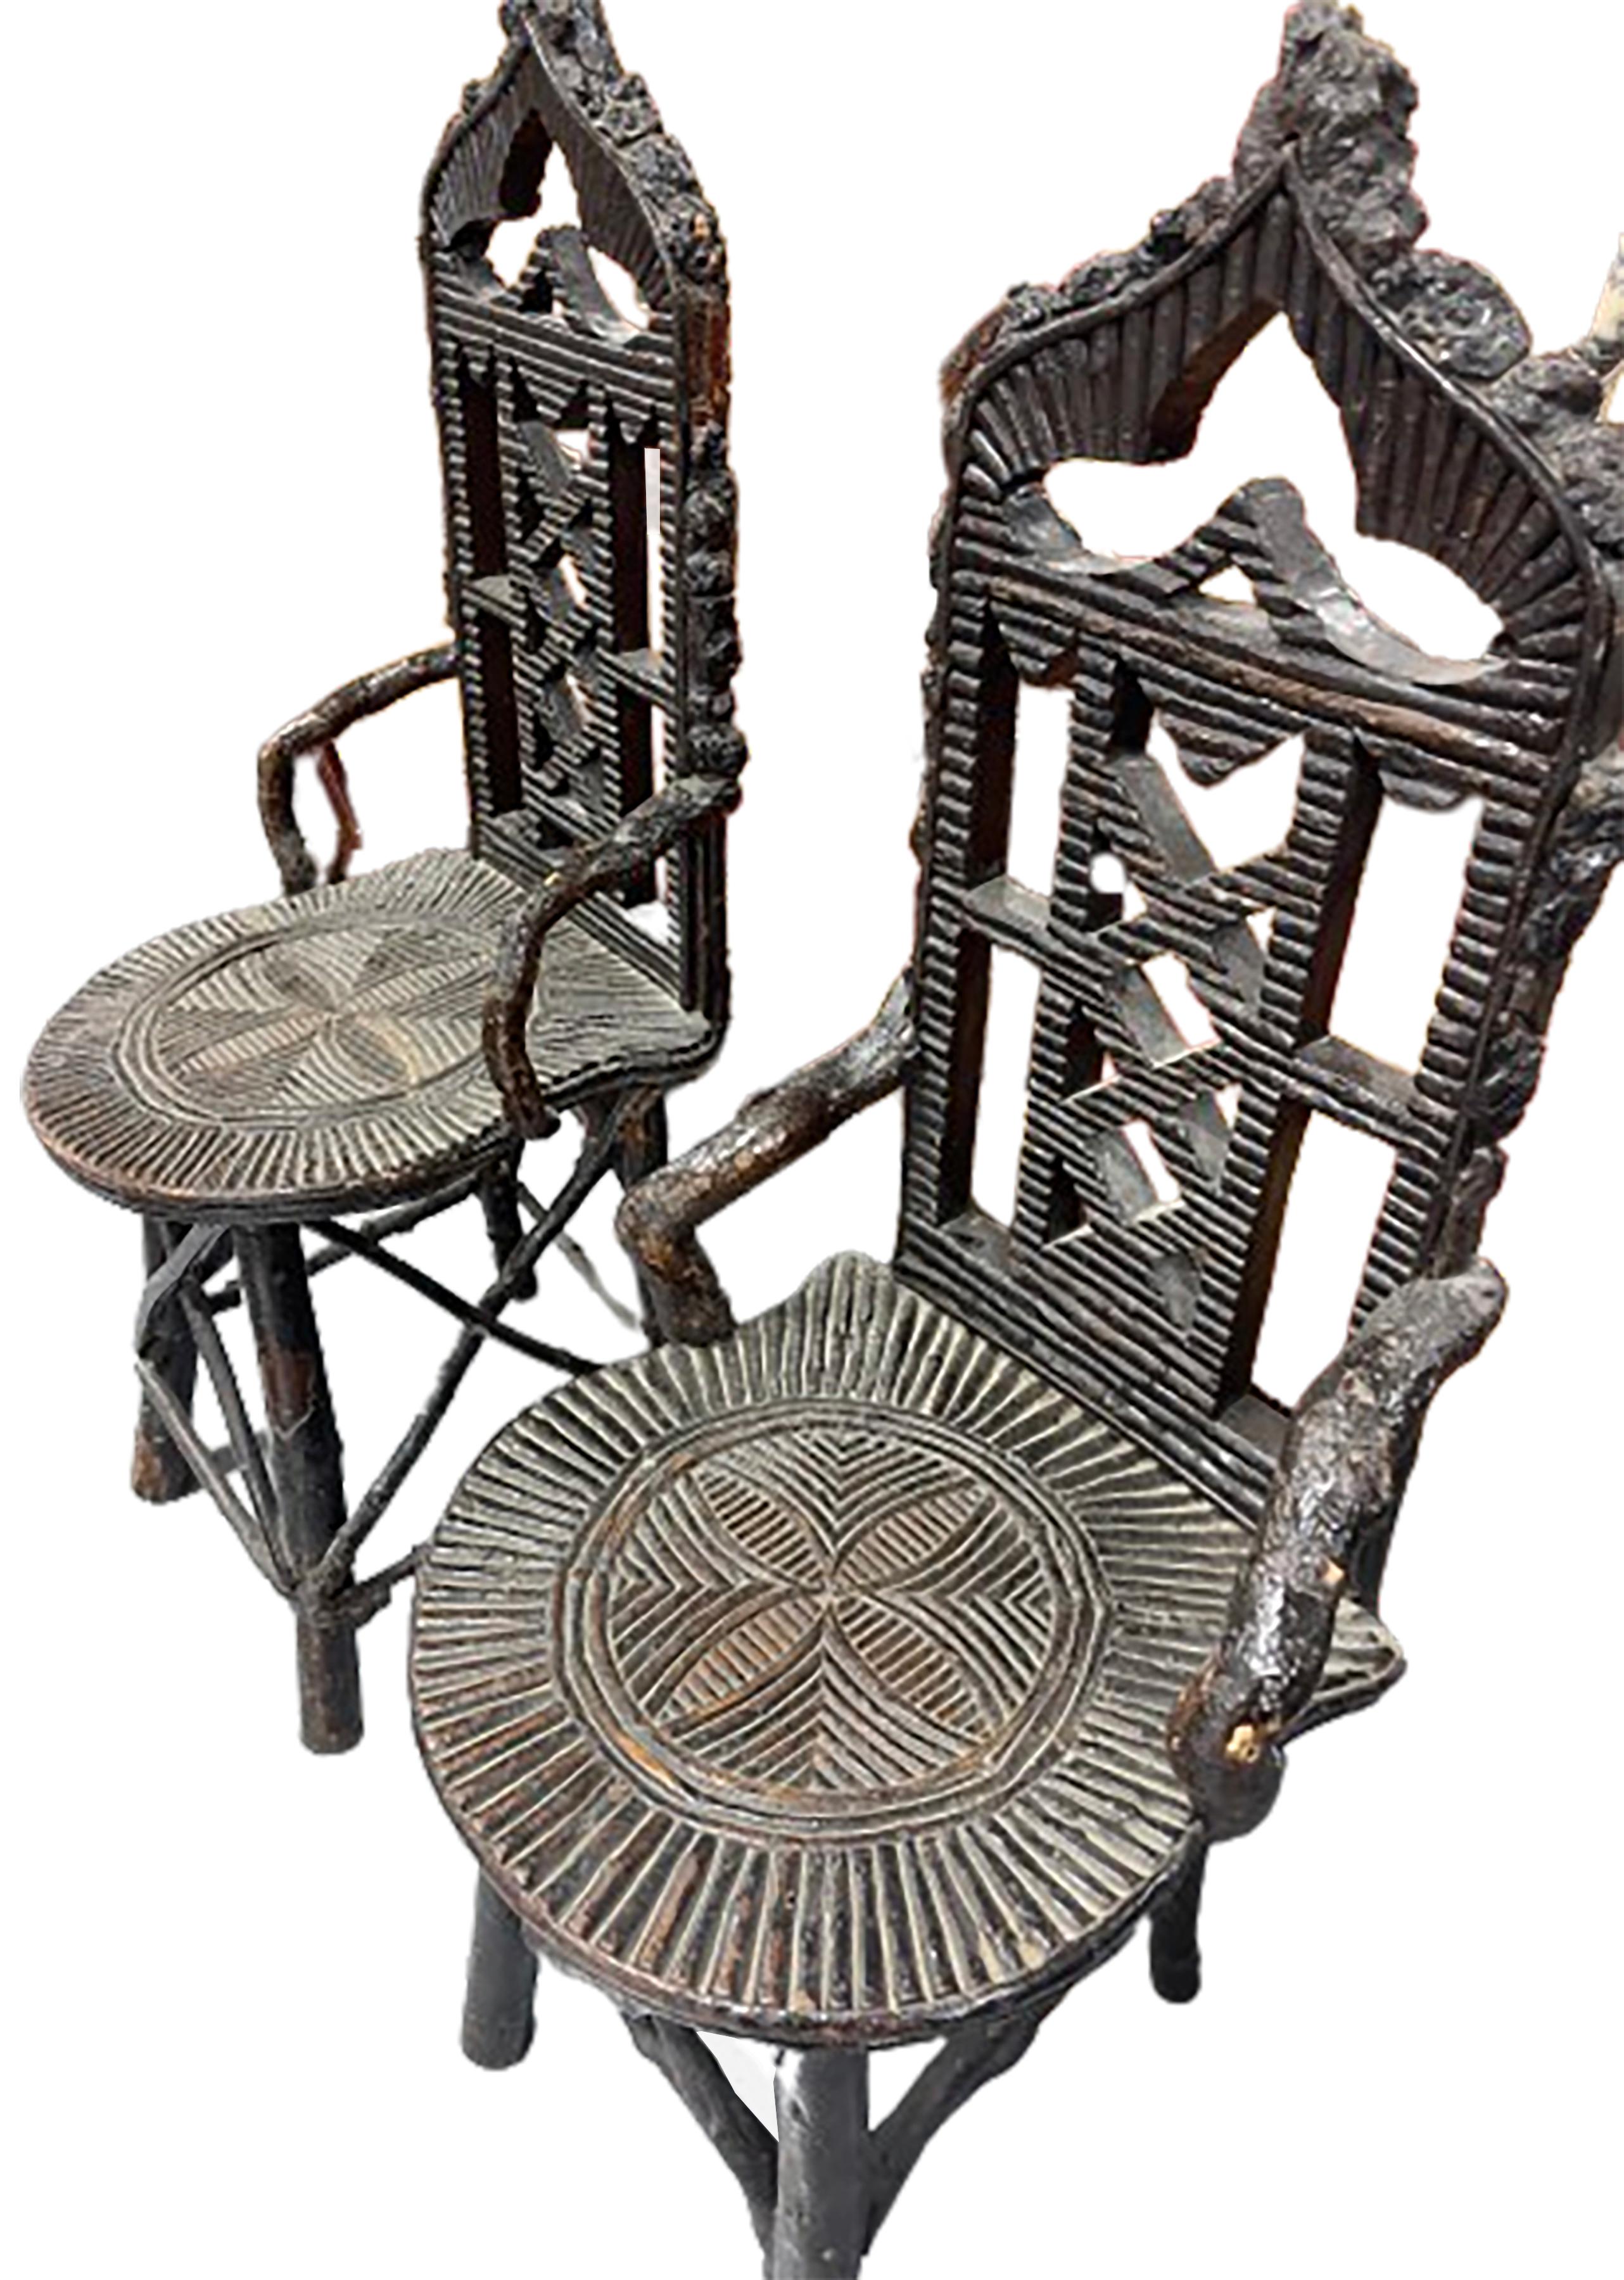 Une belle paire de chaises primitives antiques en bois noir.  L'assise est ornée de motifs sculptés de manière complexe et le dossier est ventilé. Noyer. 
 
En bon état. Usure légère correspondant à l'âge et à l'utilisation.  

Cette paire de